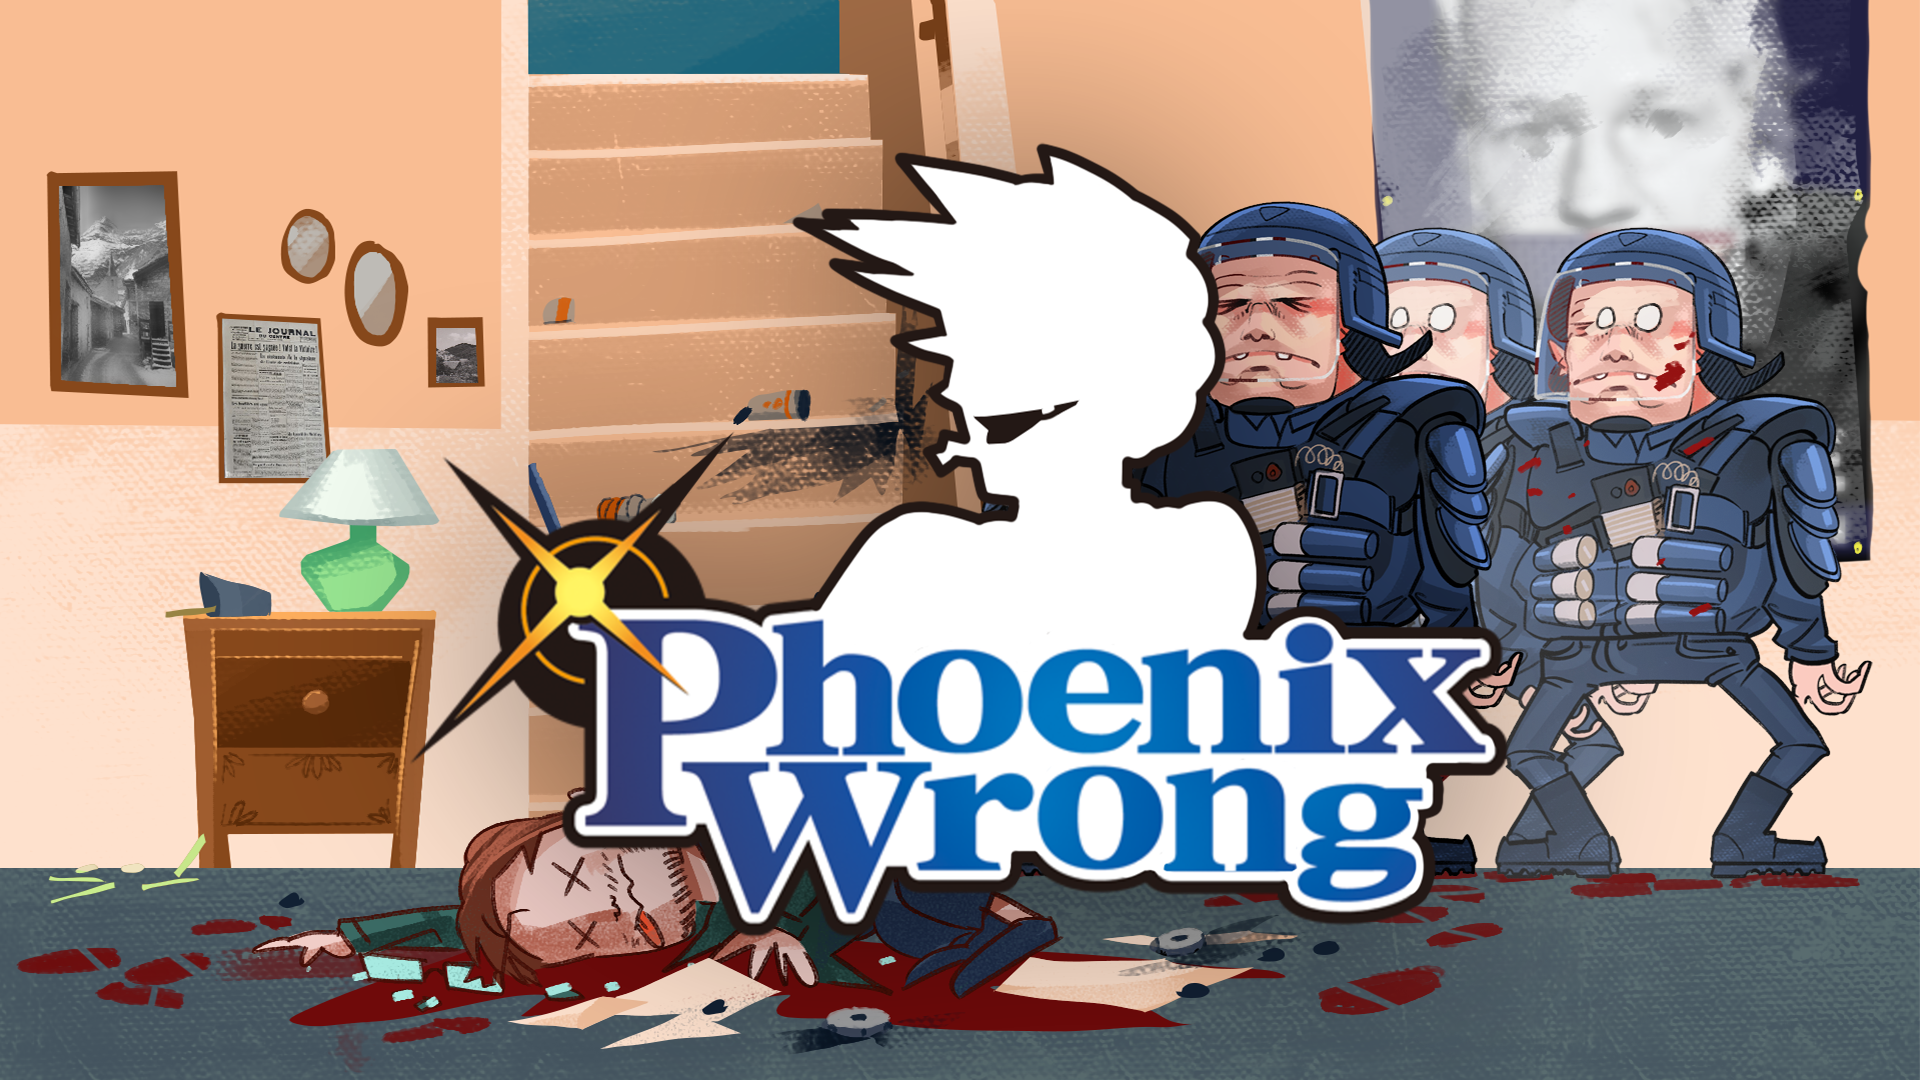 Phoenix WRONG